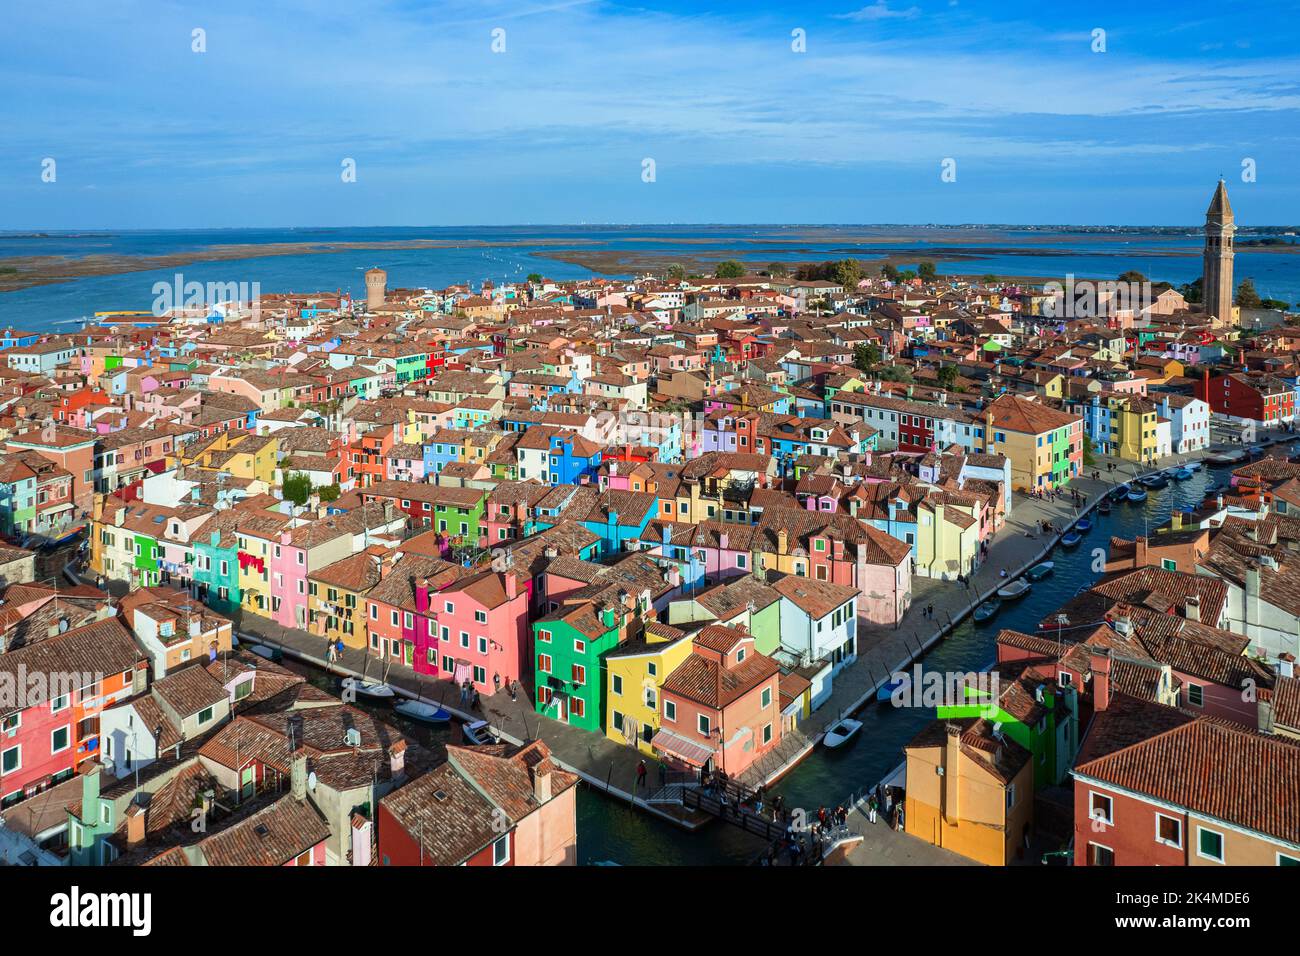 Luftaufnahme der Insel Burano. Burano ist eine der Inseln Venedigs, die für ihre bunten Häuser bekannt ist. Burano, Venedig - Oktober 2022 Stockfoto